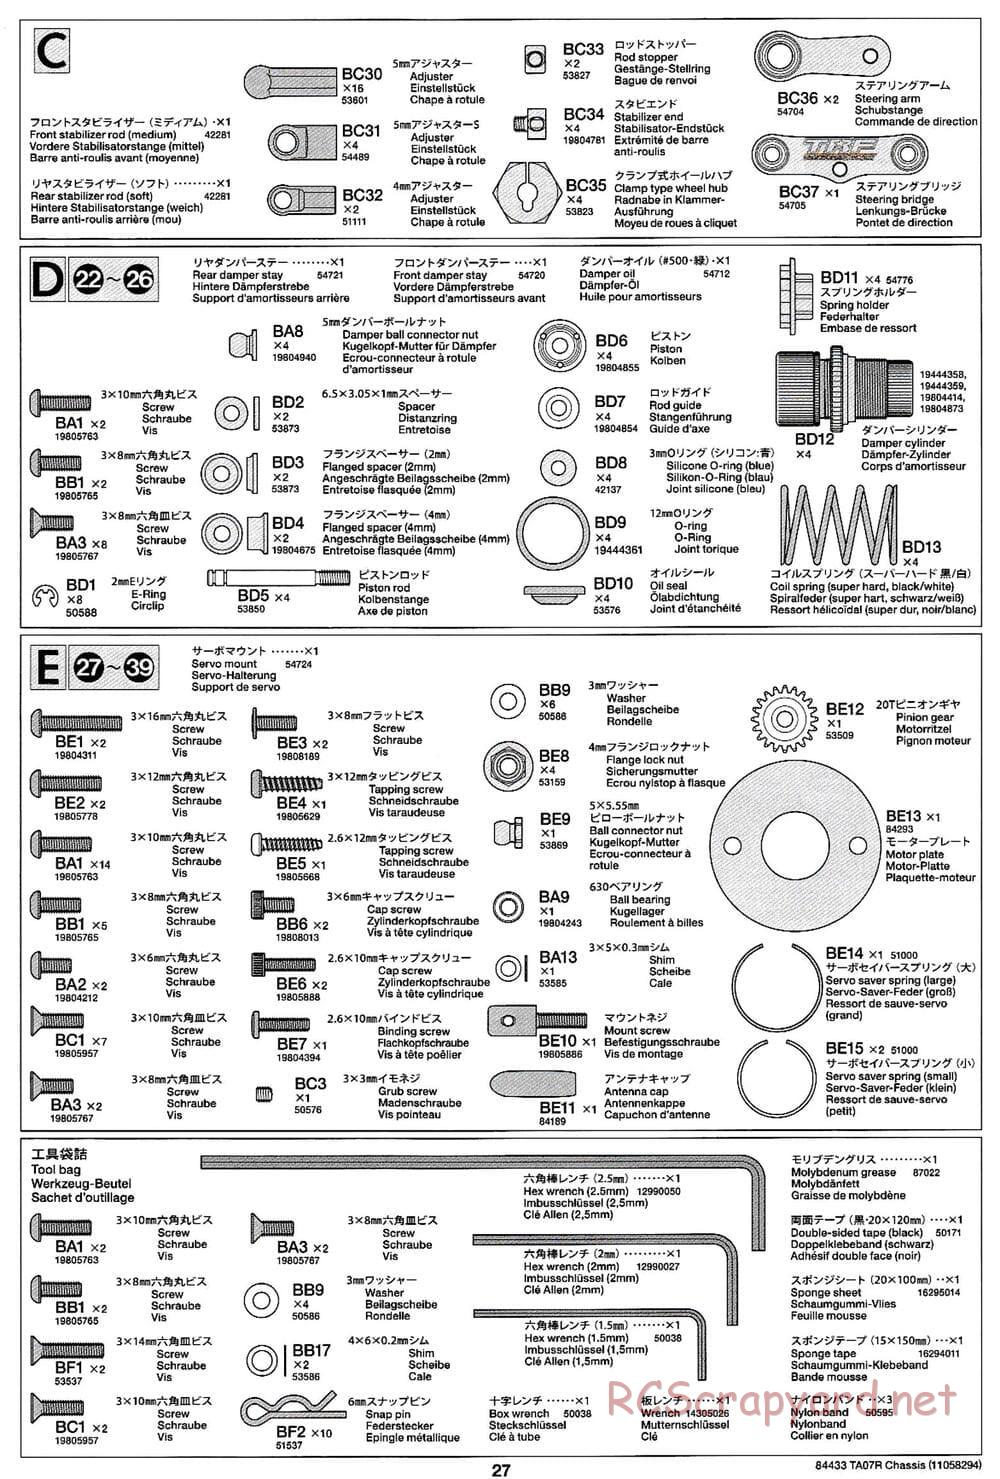 Tamiya - TA07 R Chassis - Manual - Page 27